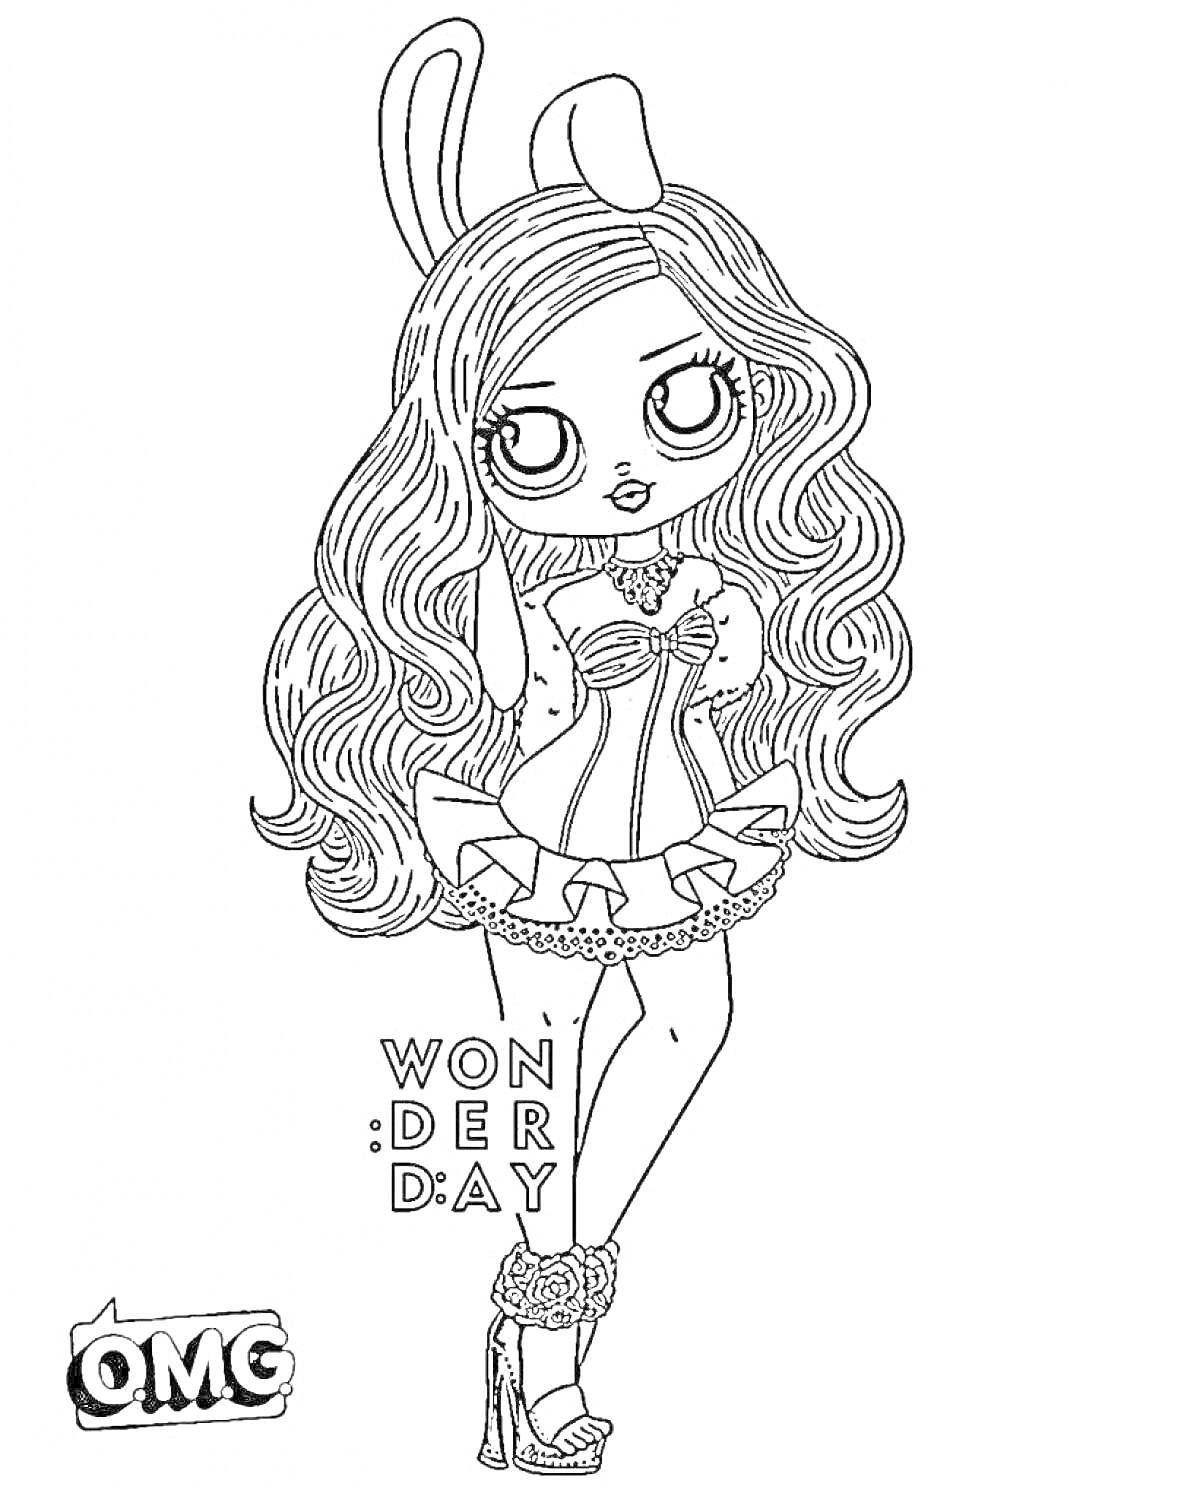 Кукла с длинными волосами, ушками кролика, корсетом и пышной юбкой, надписью WONDERDAY и логотипом OMG